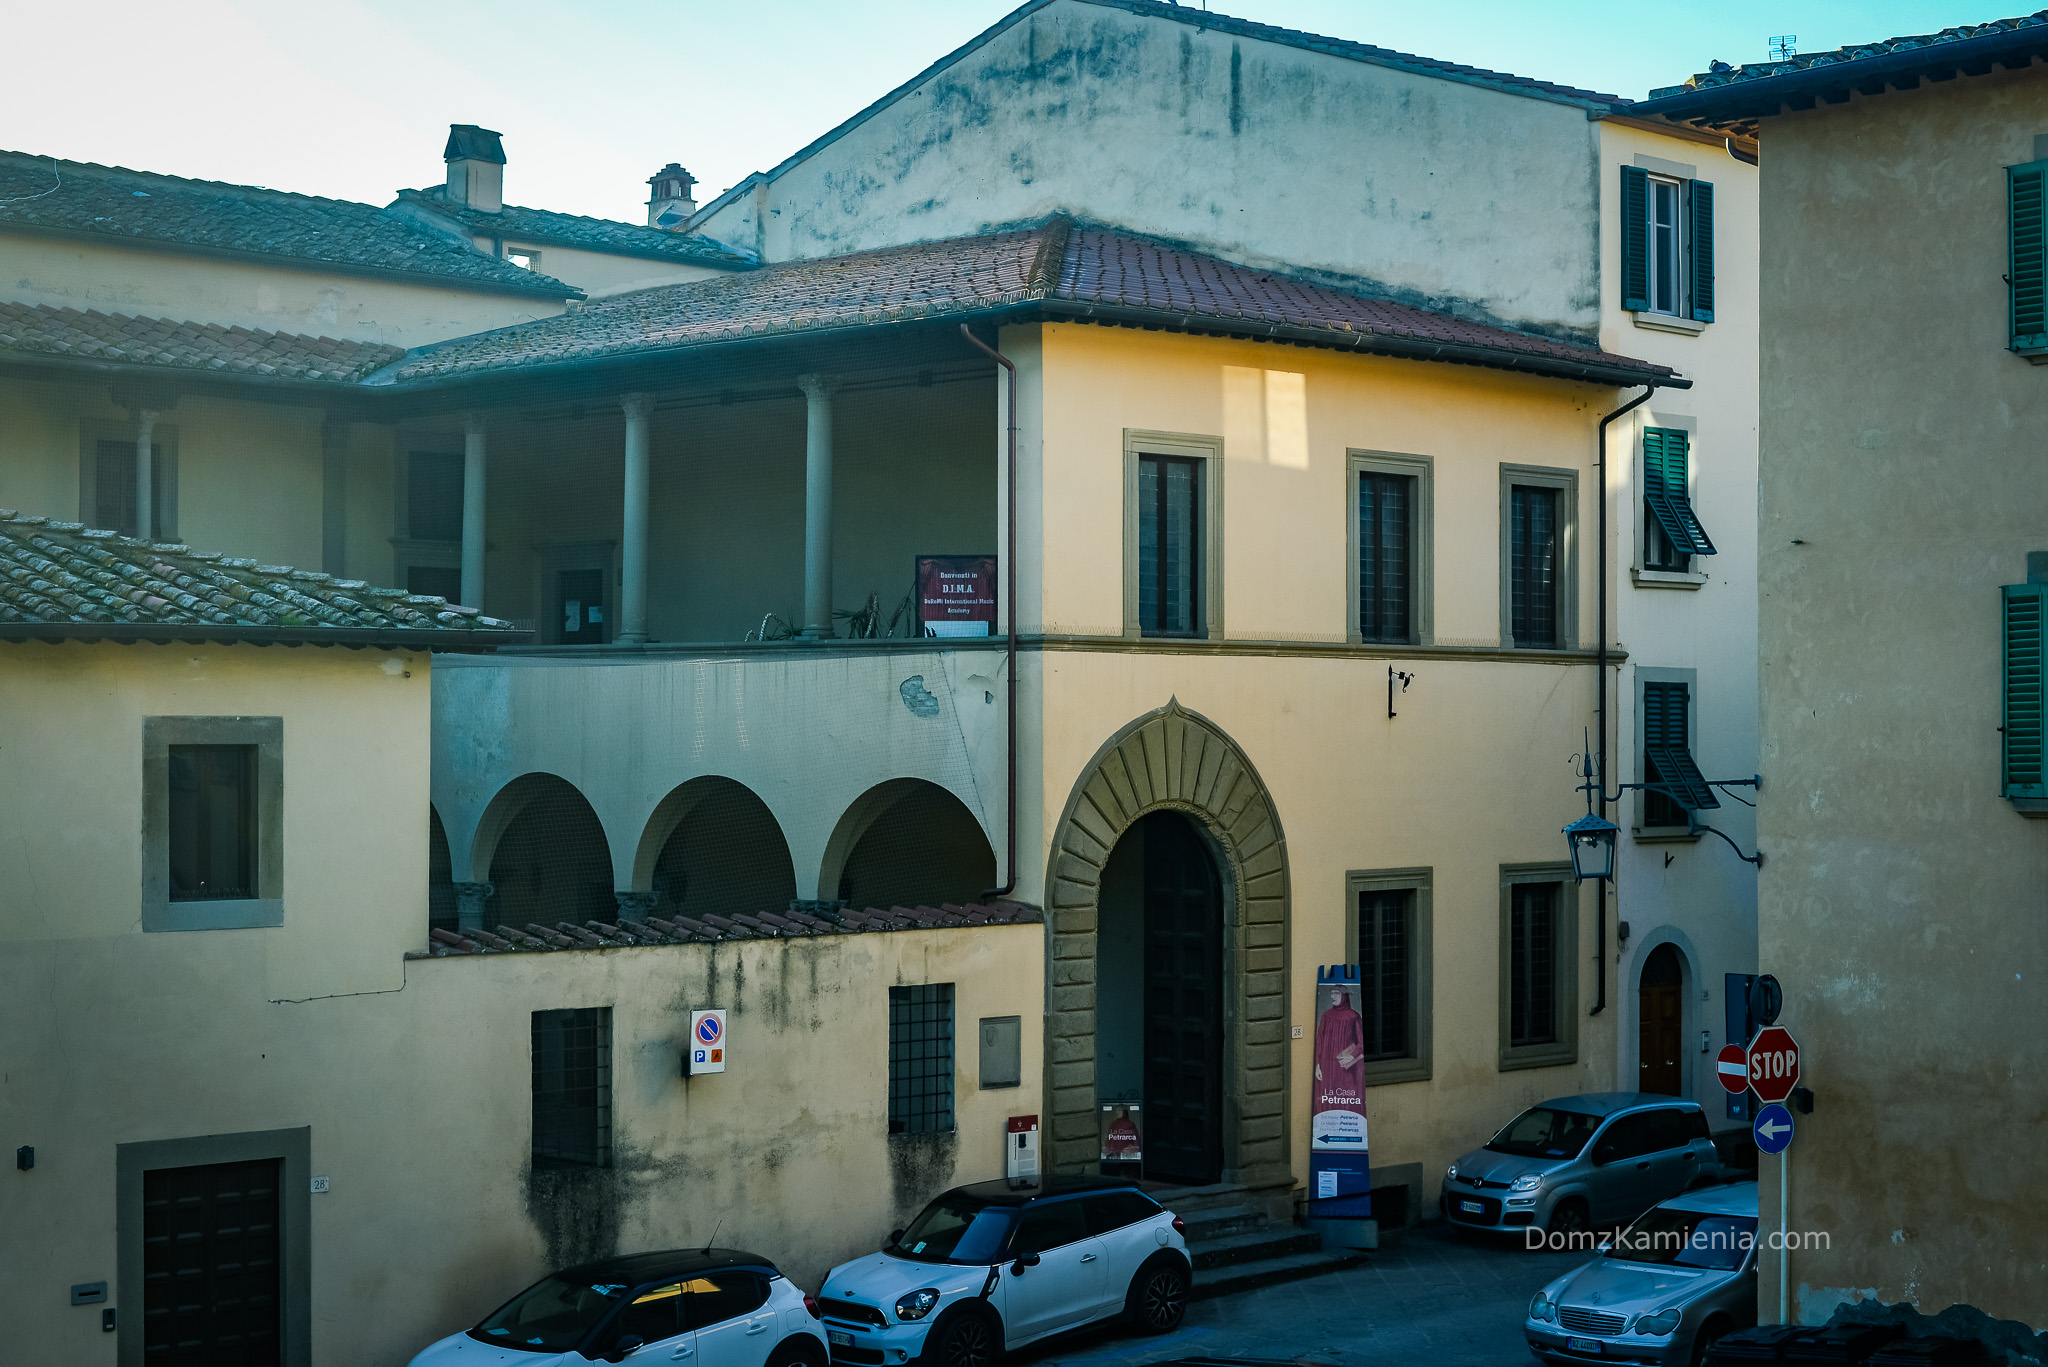 Co zobaczyć w Arezzo - Dom z Kamienia blog